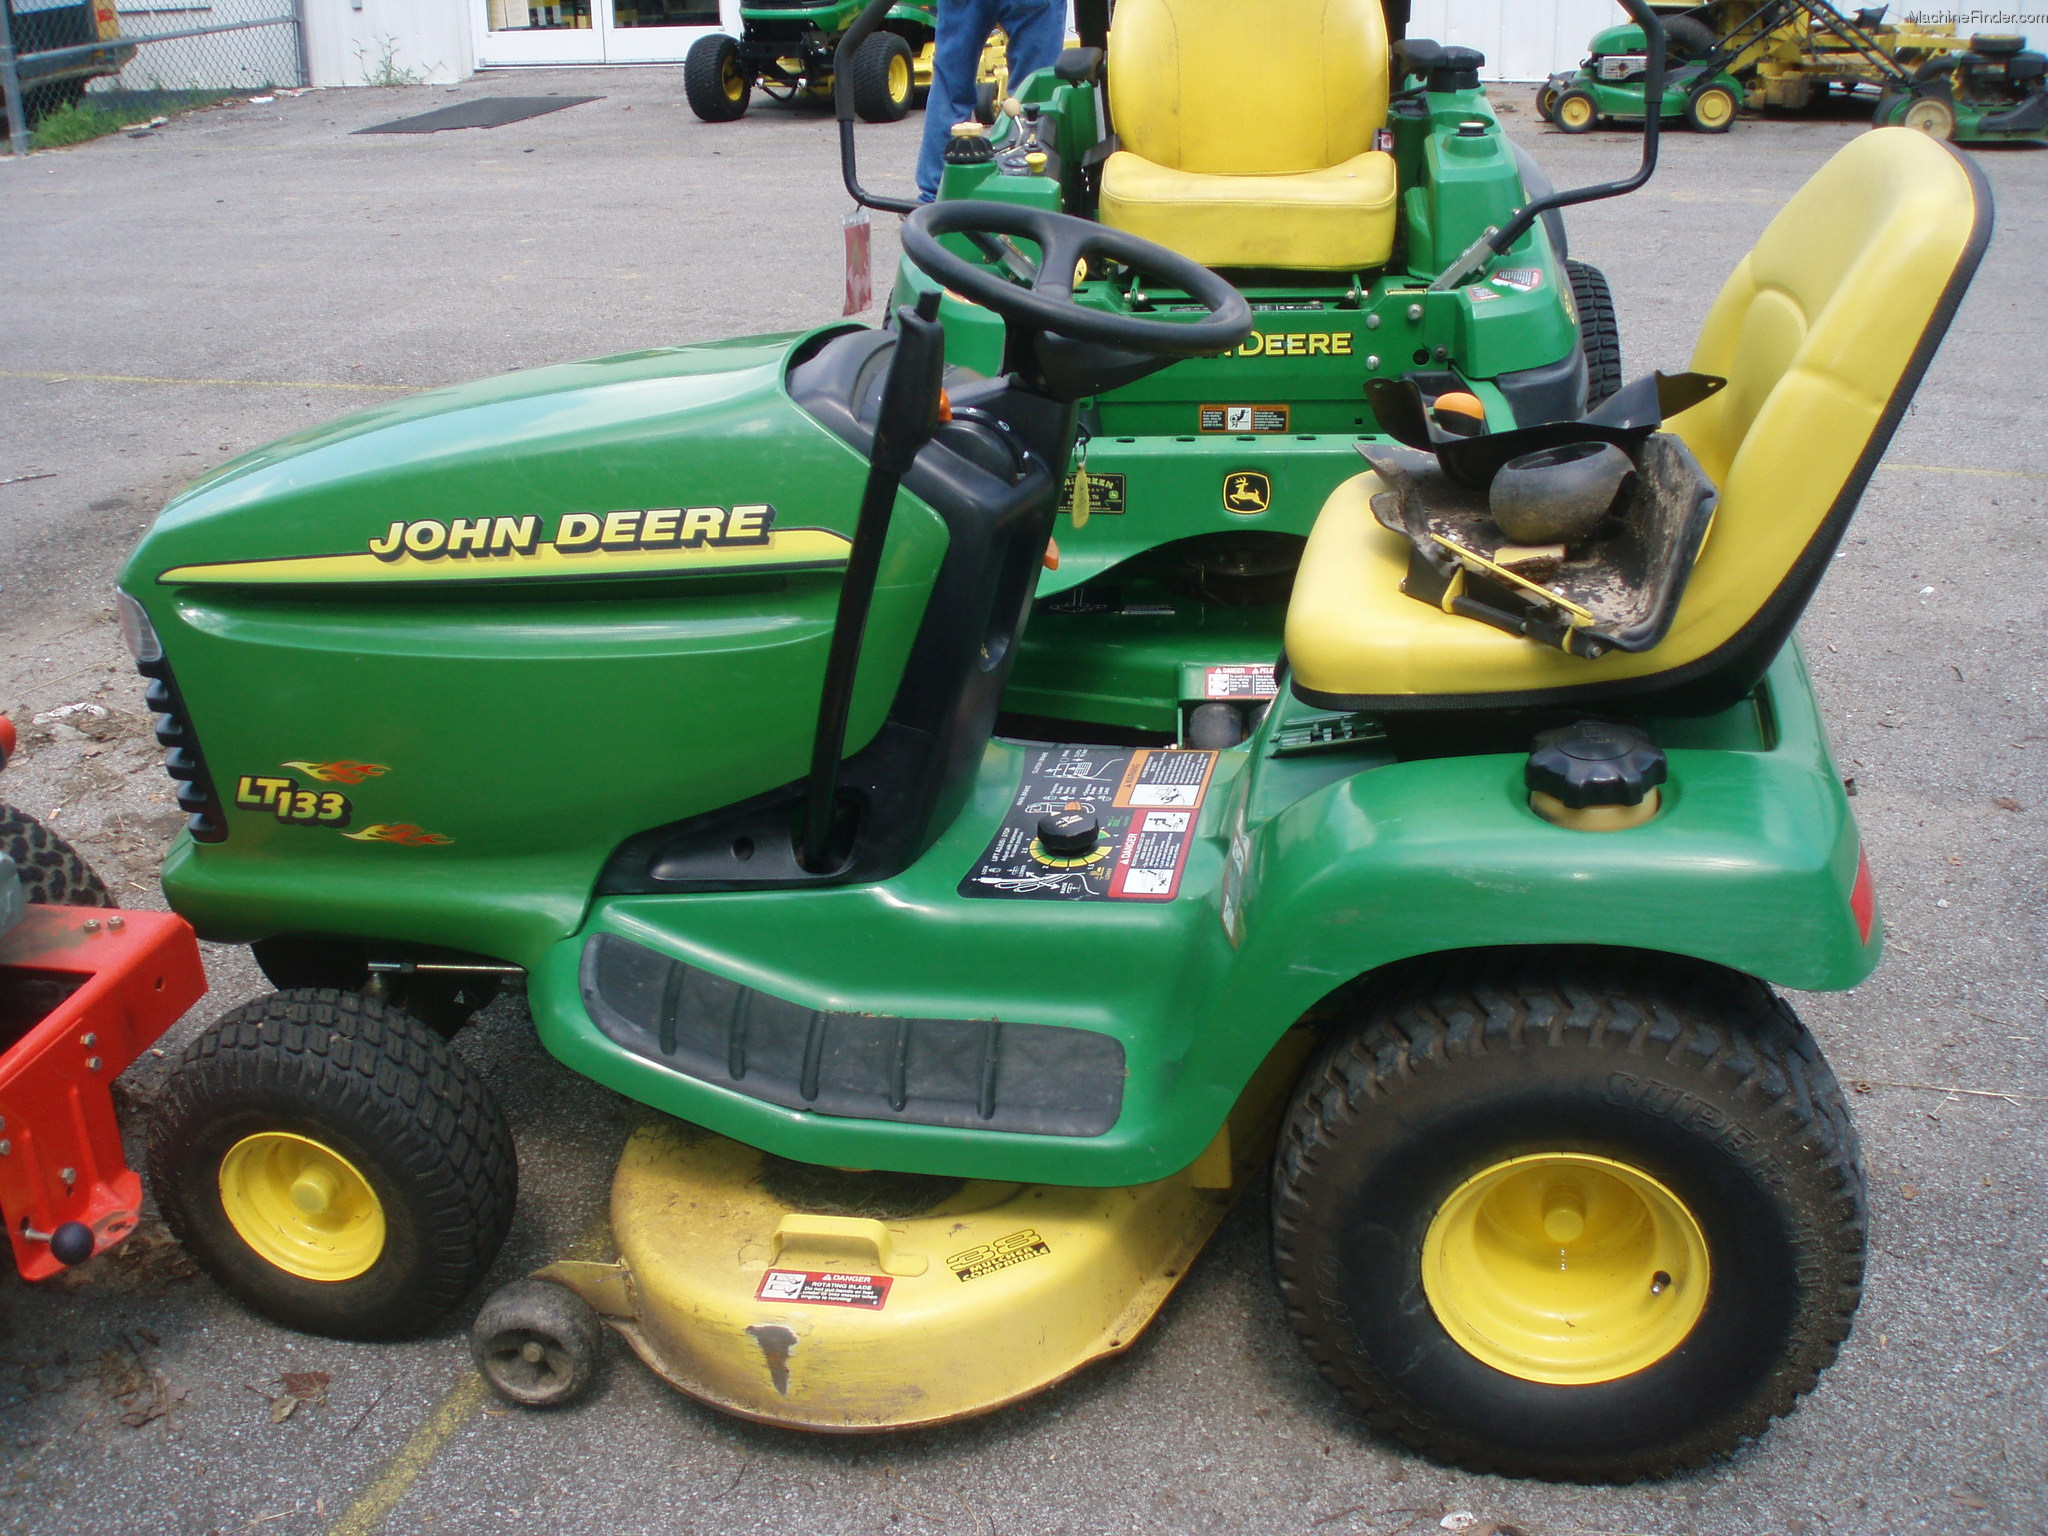 1998 John Deere LT133 Lawn & Garden and Commercial Mowing - John Deere ...